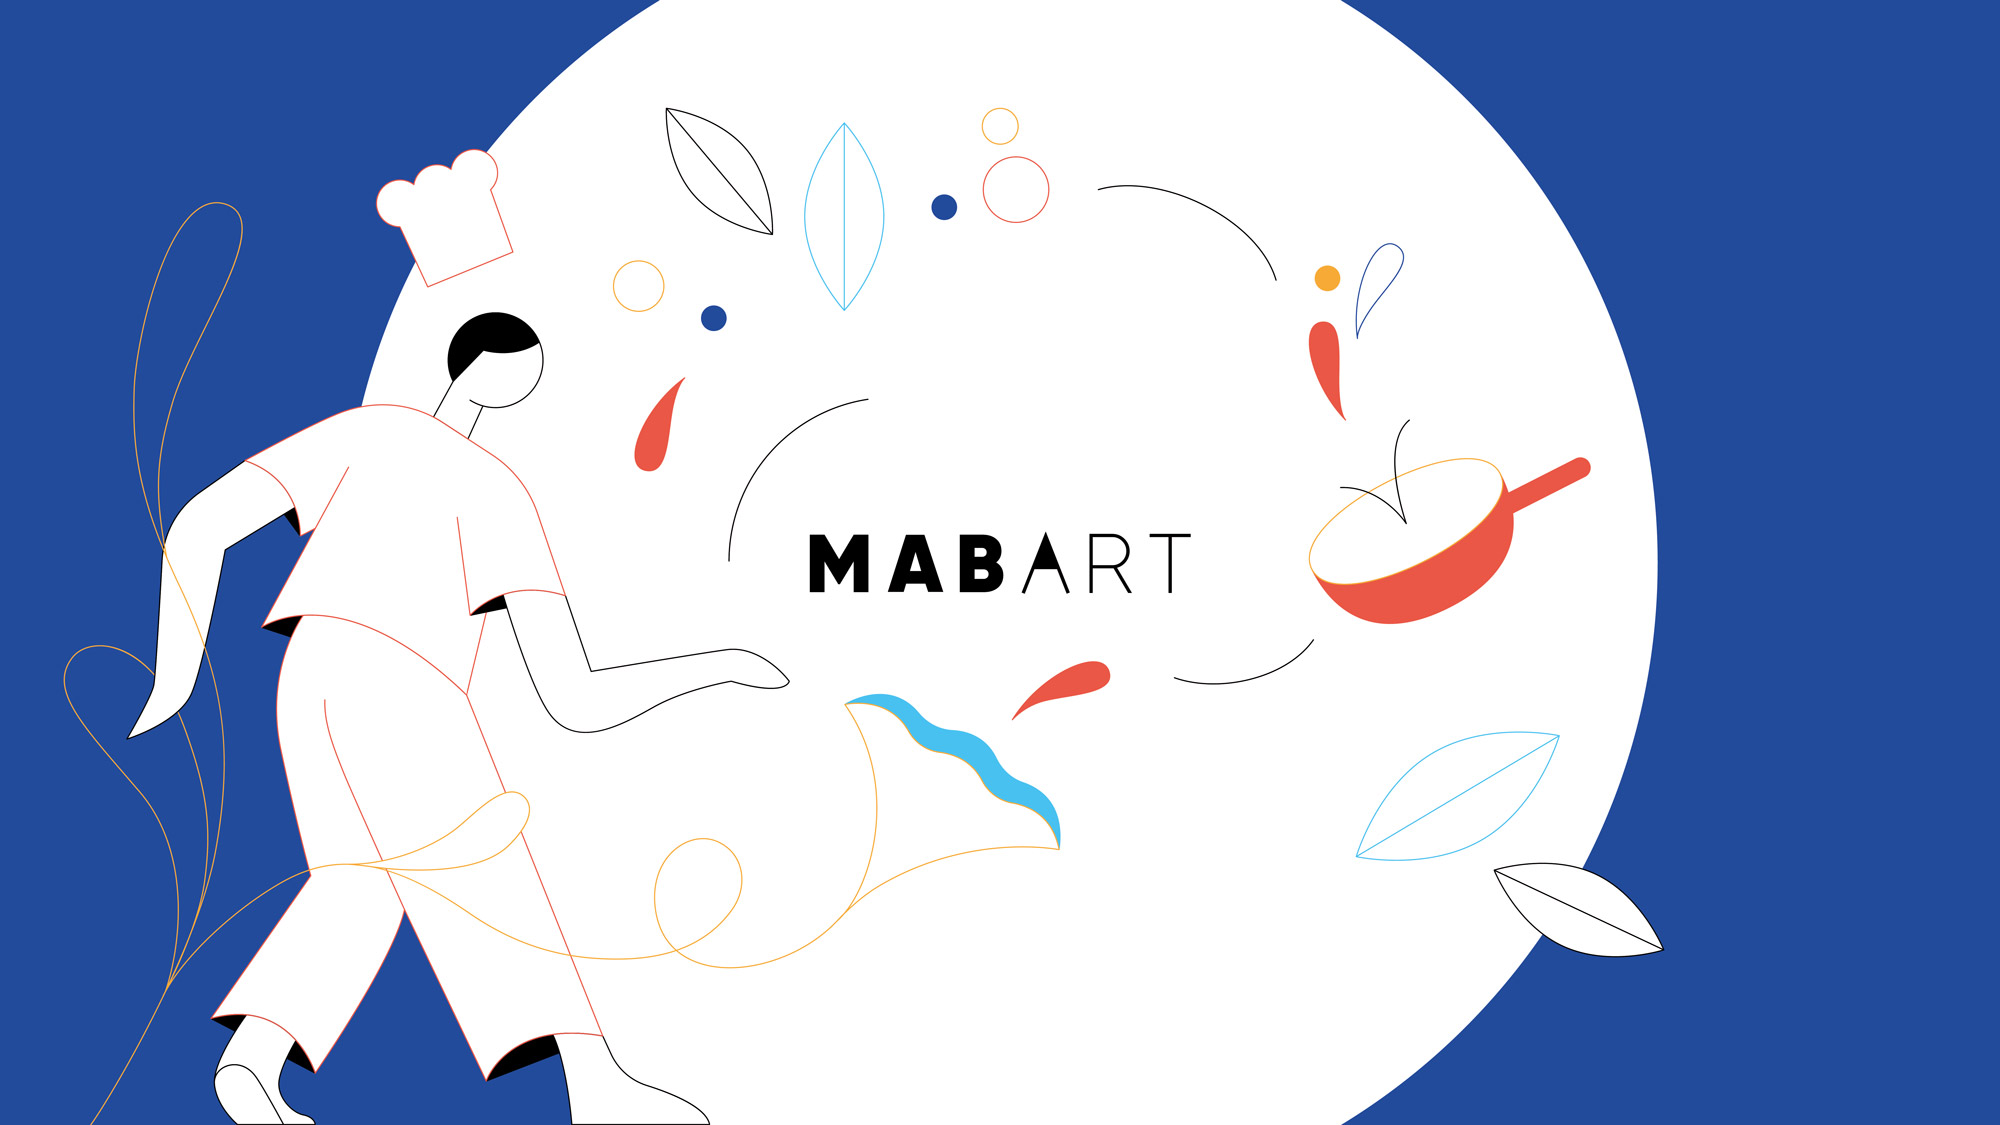 MAB-ART Food